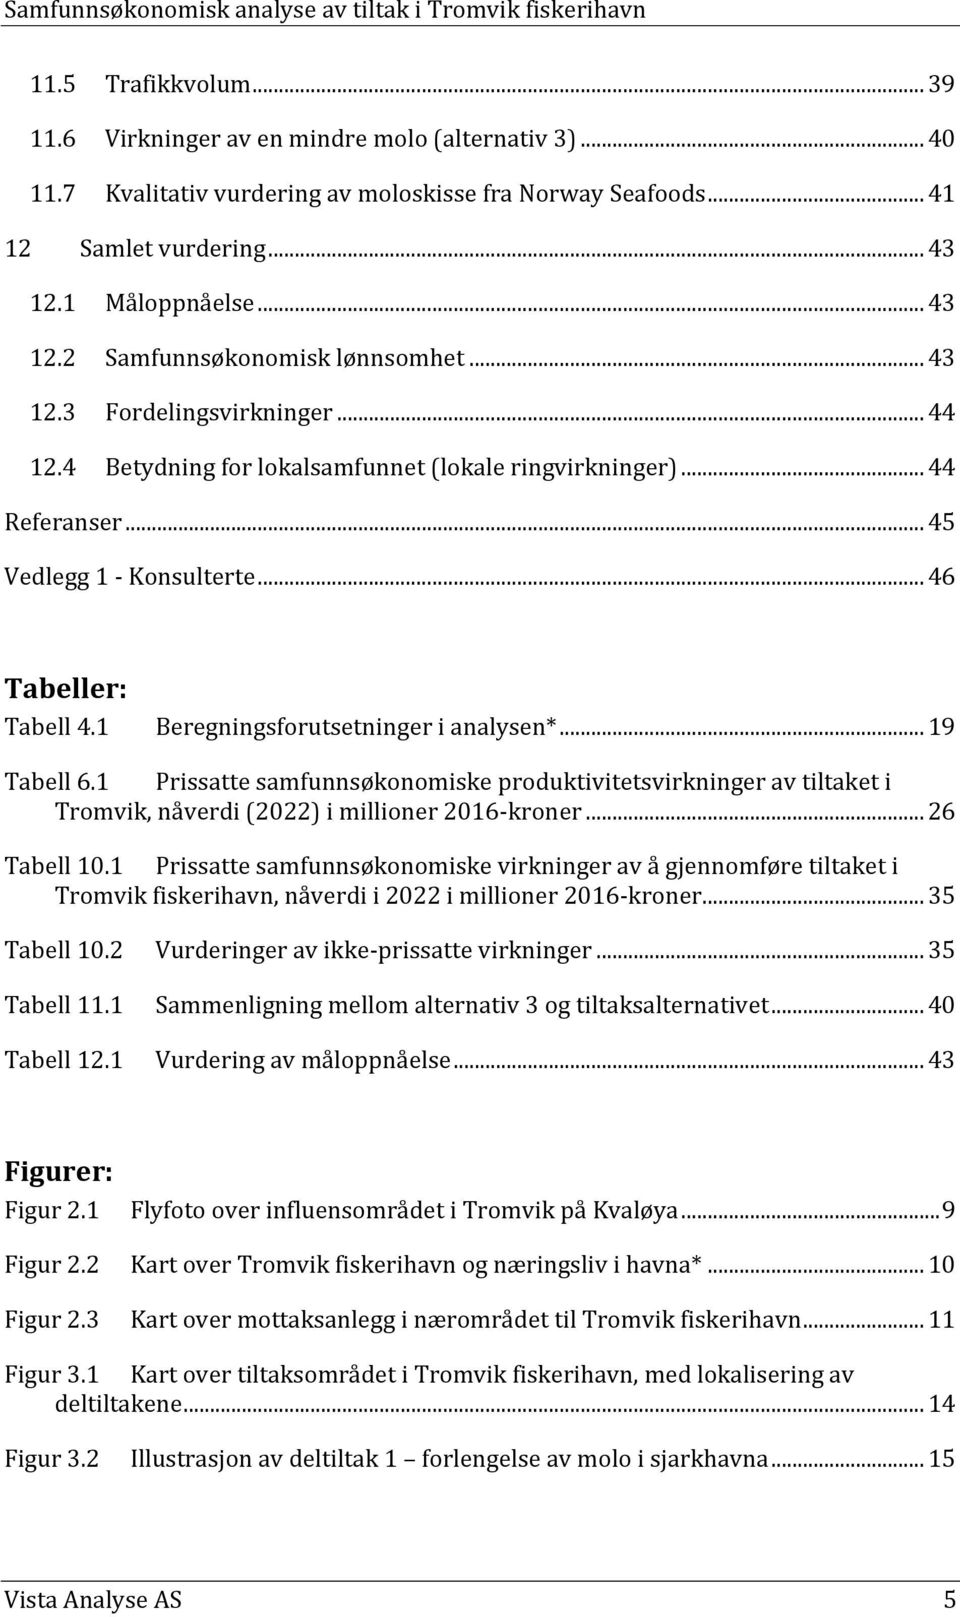 .. 46 Tabeller: Tabell 4.1 Beregningsforutsetninger i analysen*... 19 Tabell 6.1 Prissatte samfunnsøkonomiske produktivitetsvirkninger av tiltaket i Tromvik, nåverdi (2022) i millioner 2016-kroner.